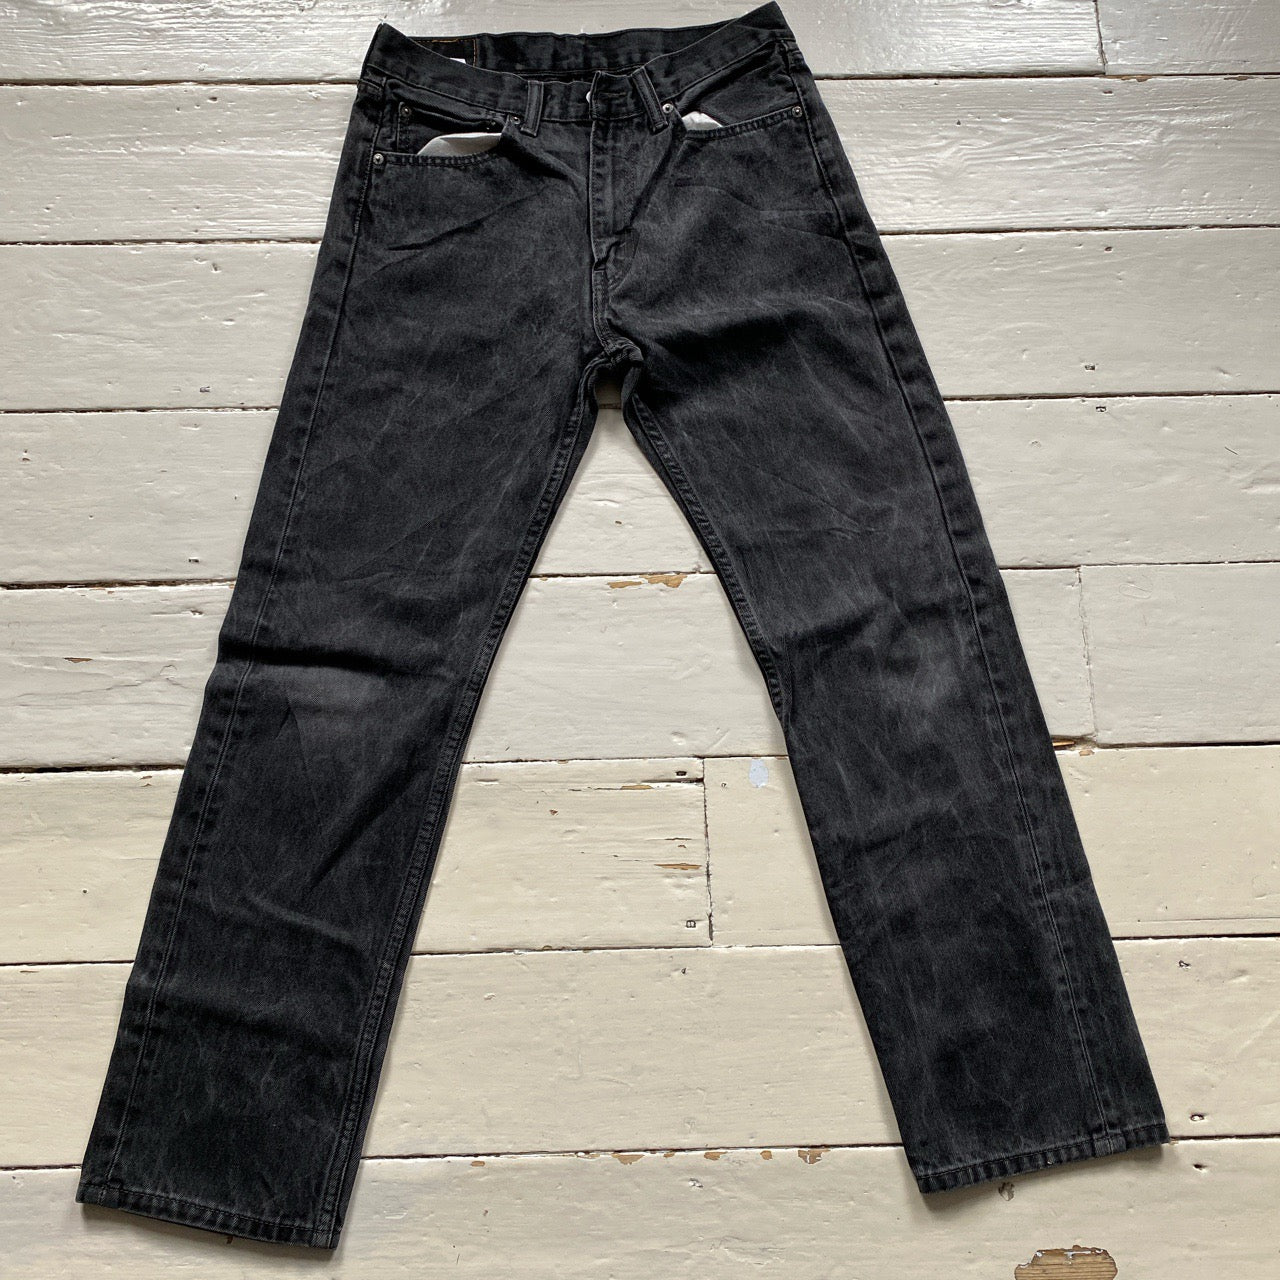 Levis 505 Light Charcoal Jeans (32/30)